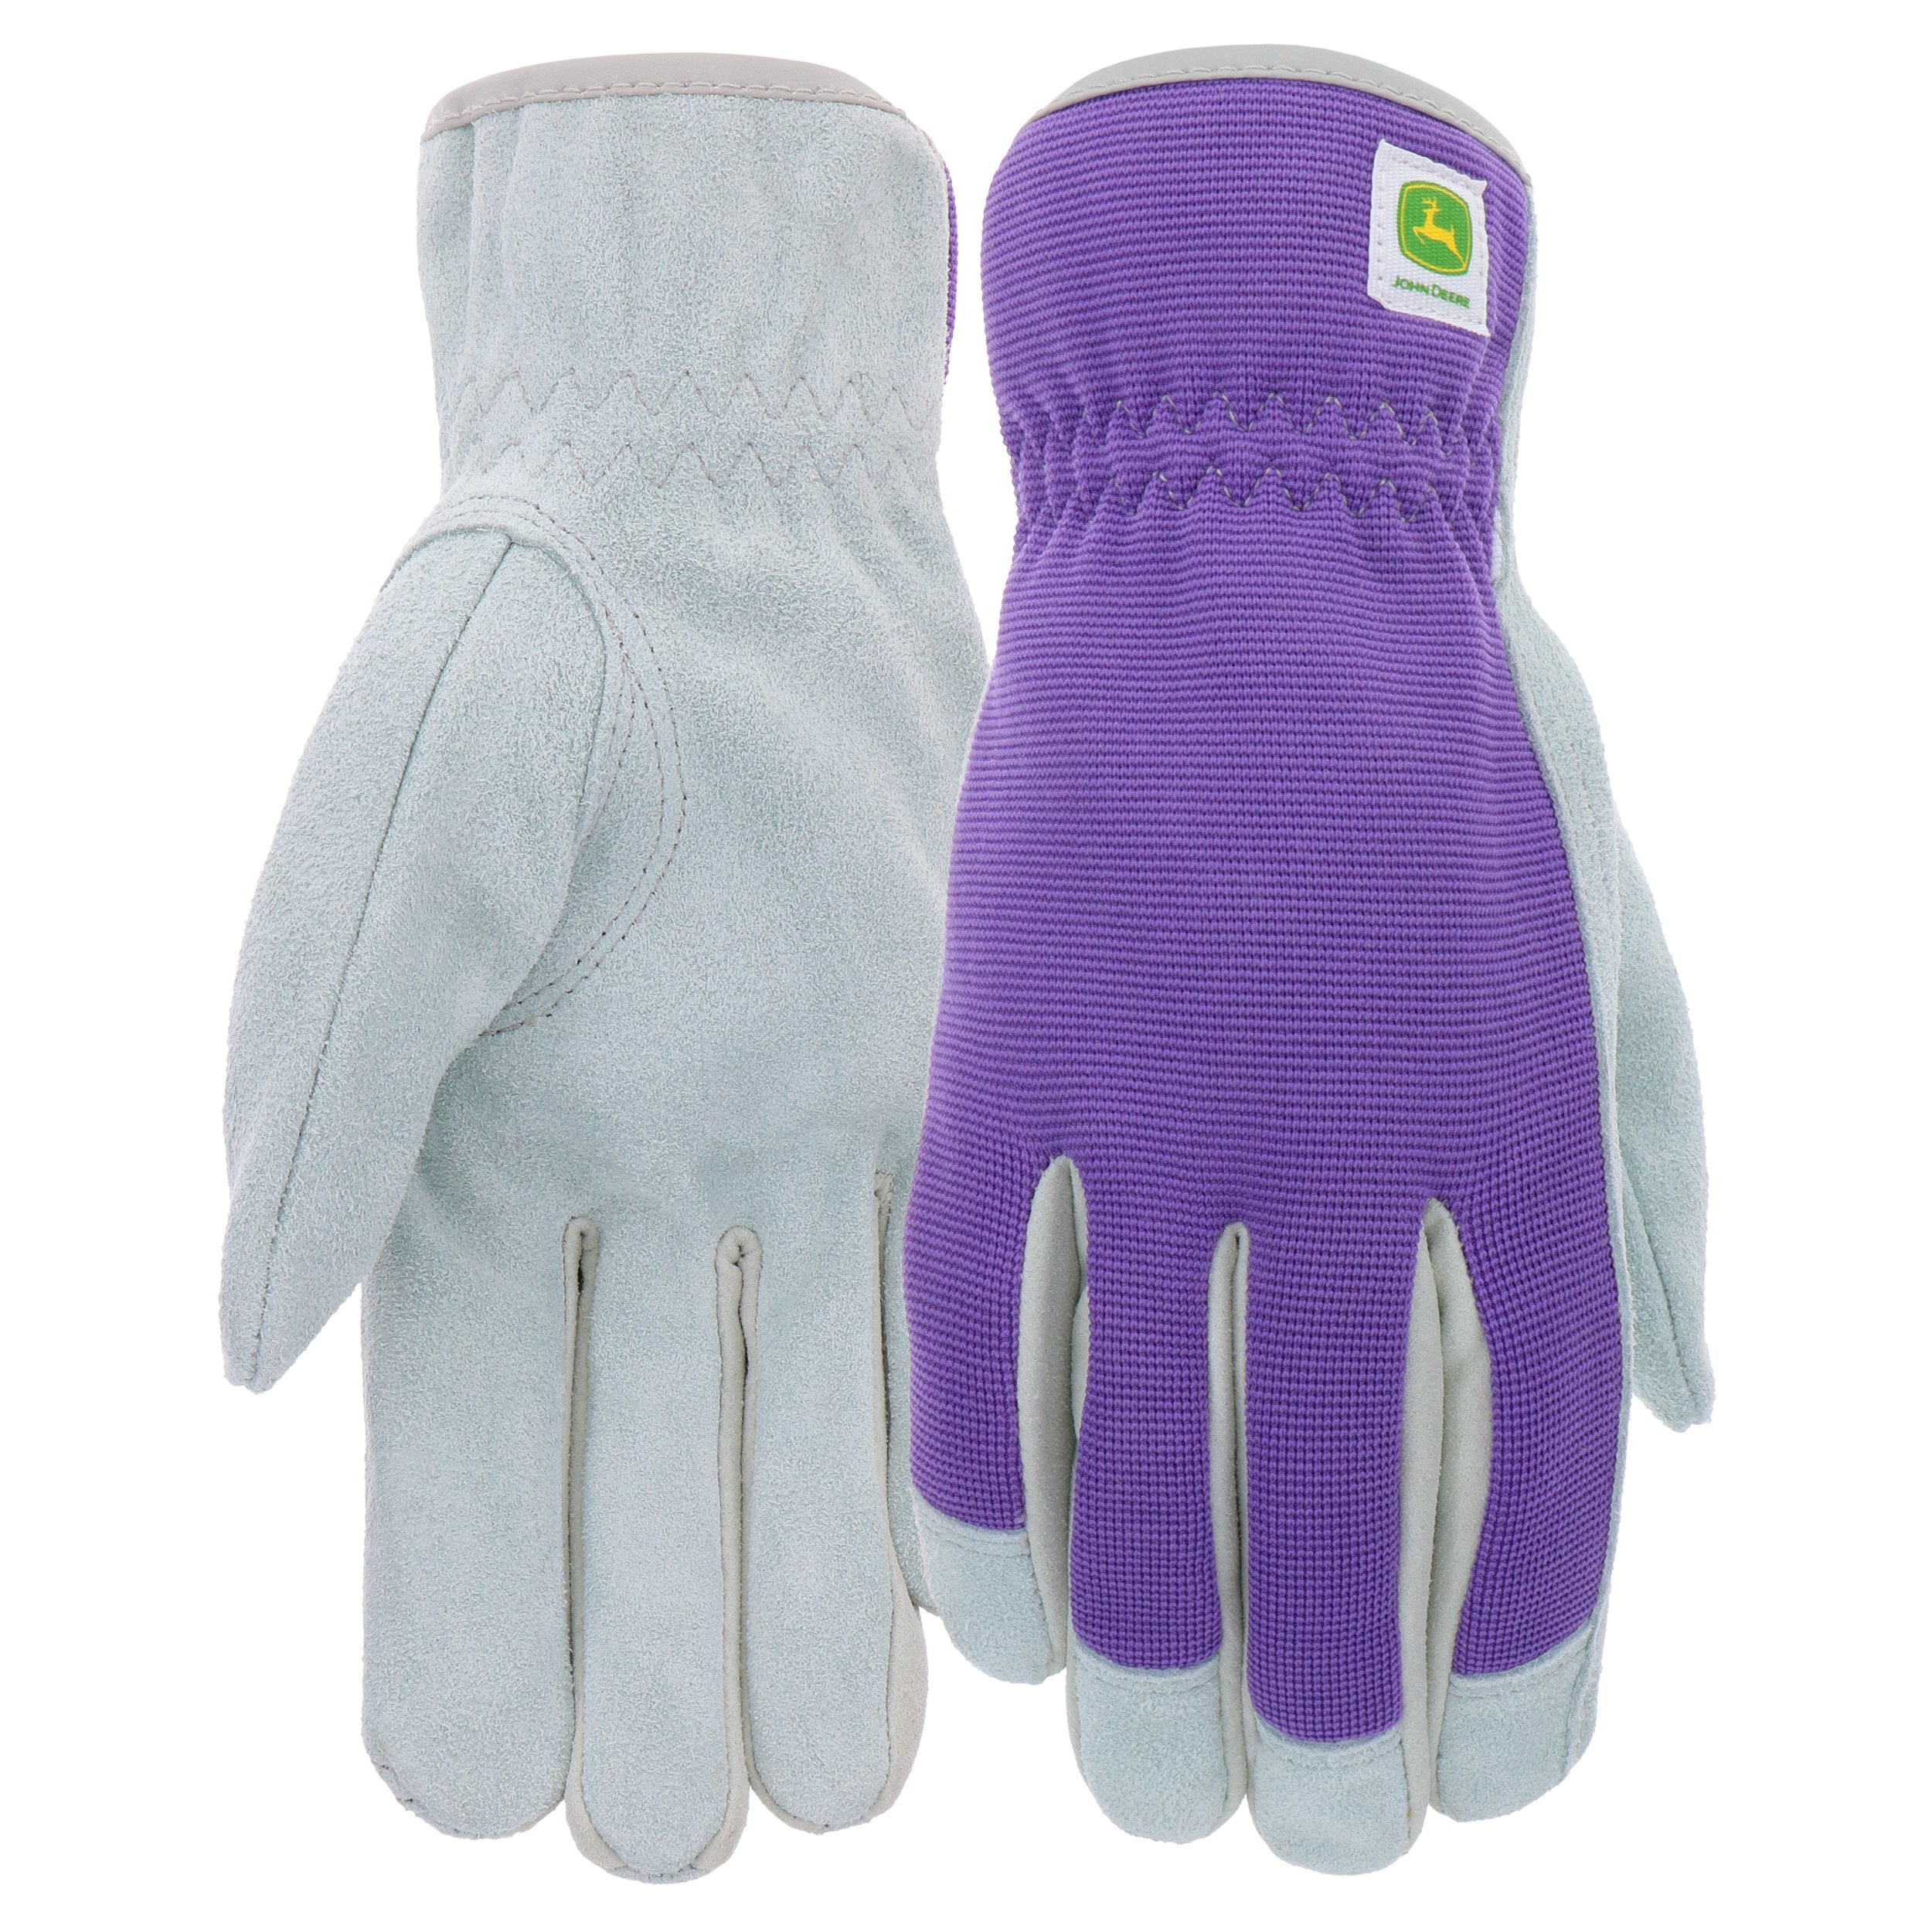 John Deere Work Gloves at